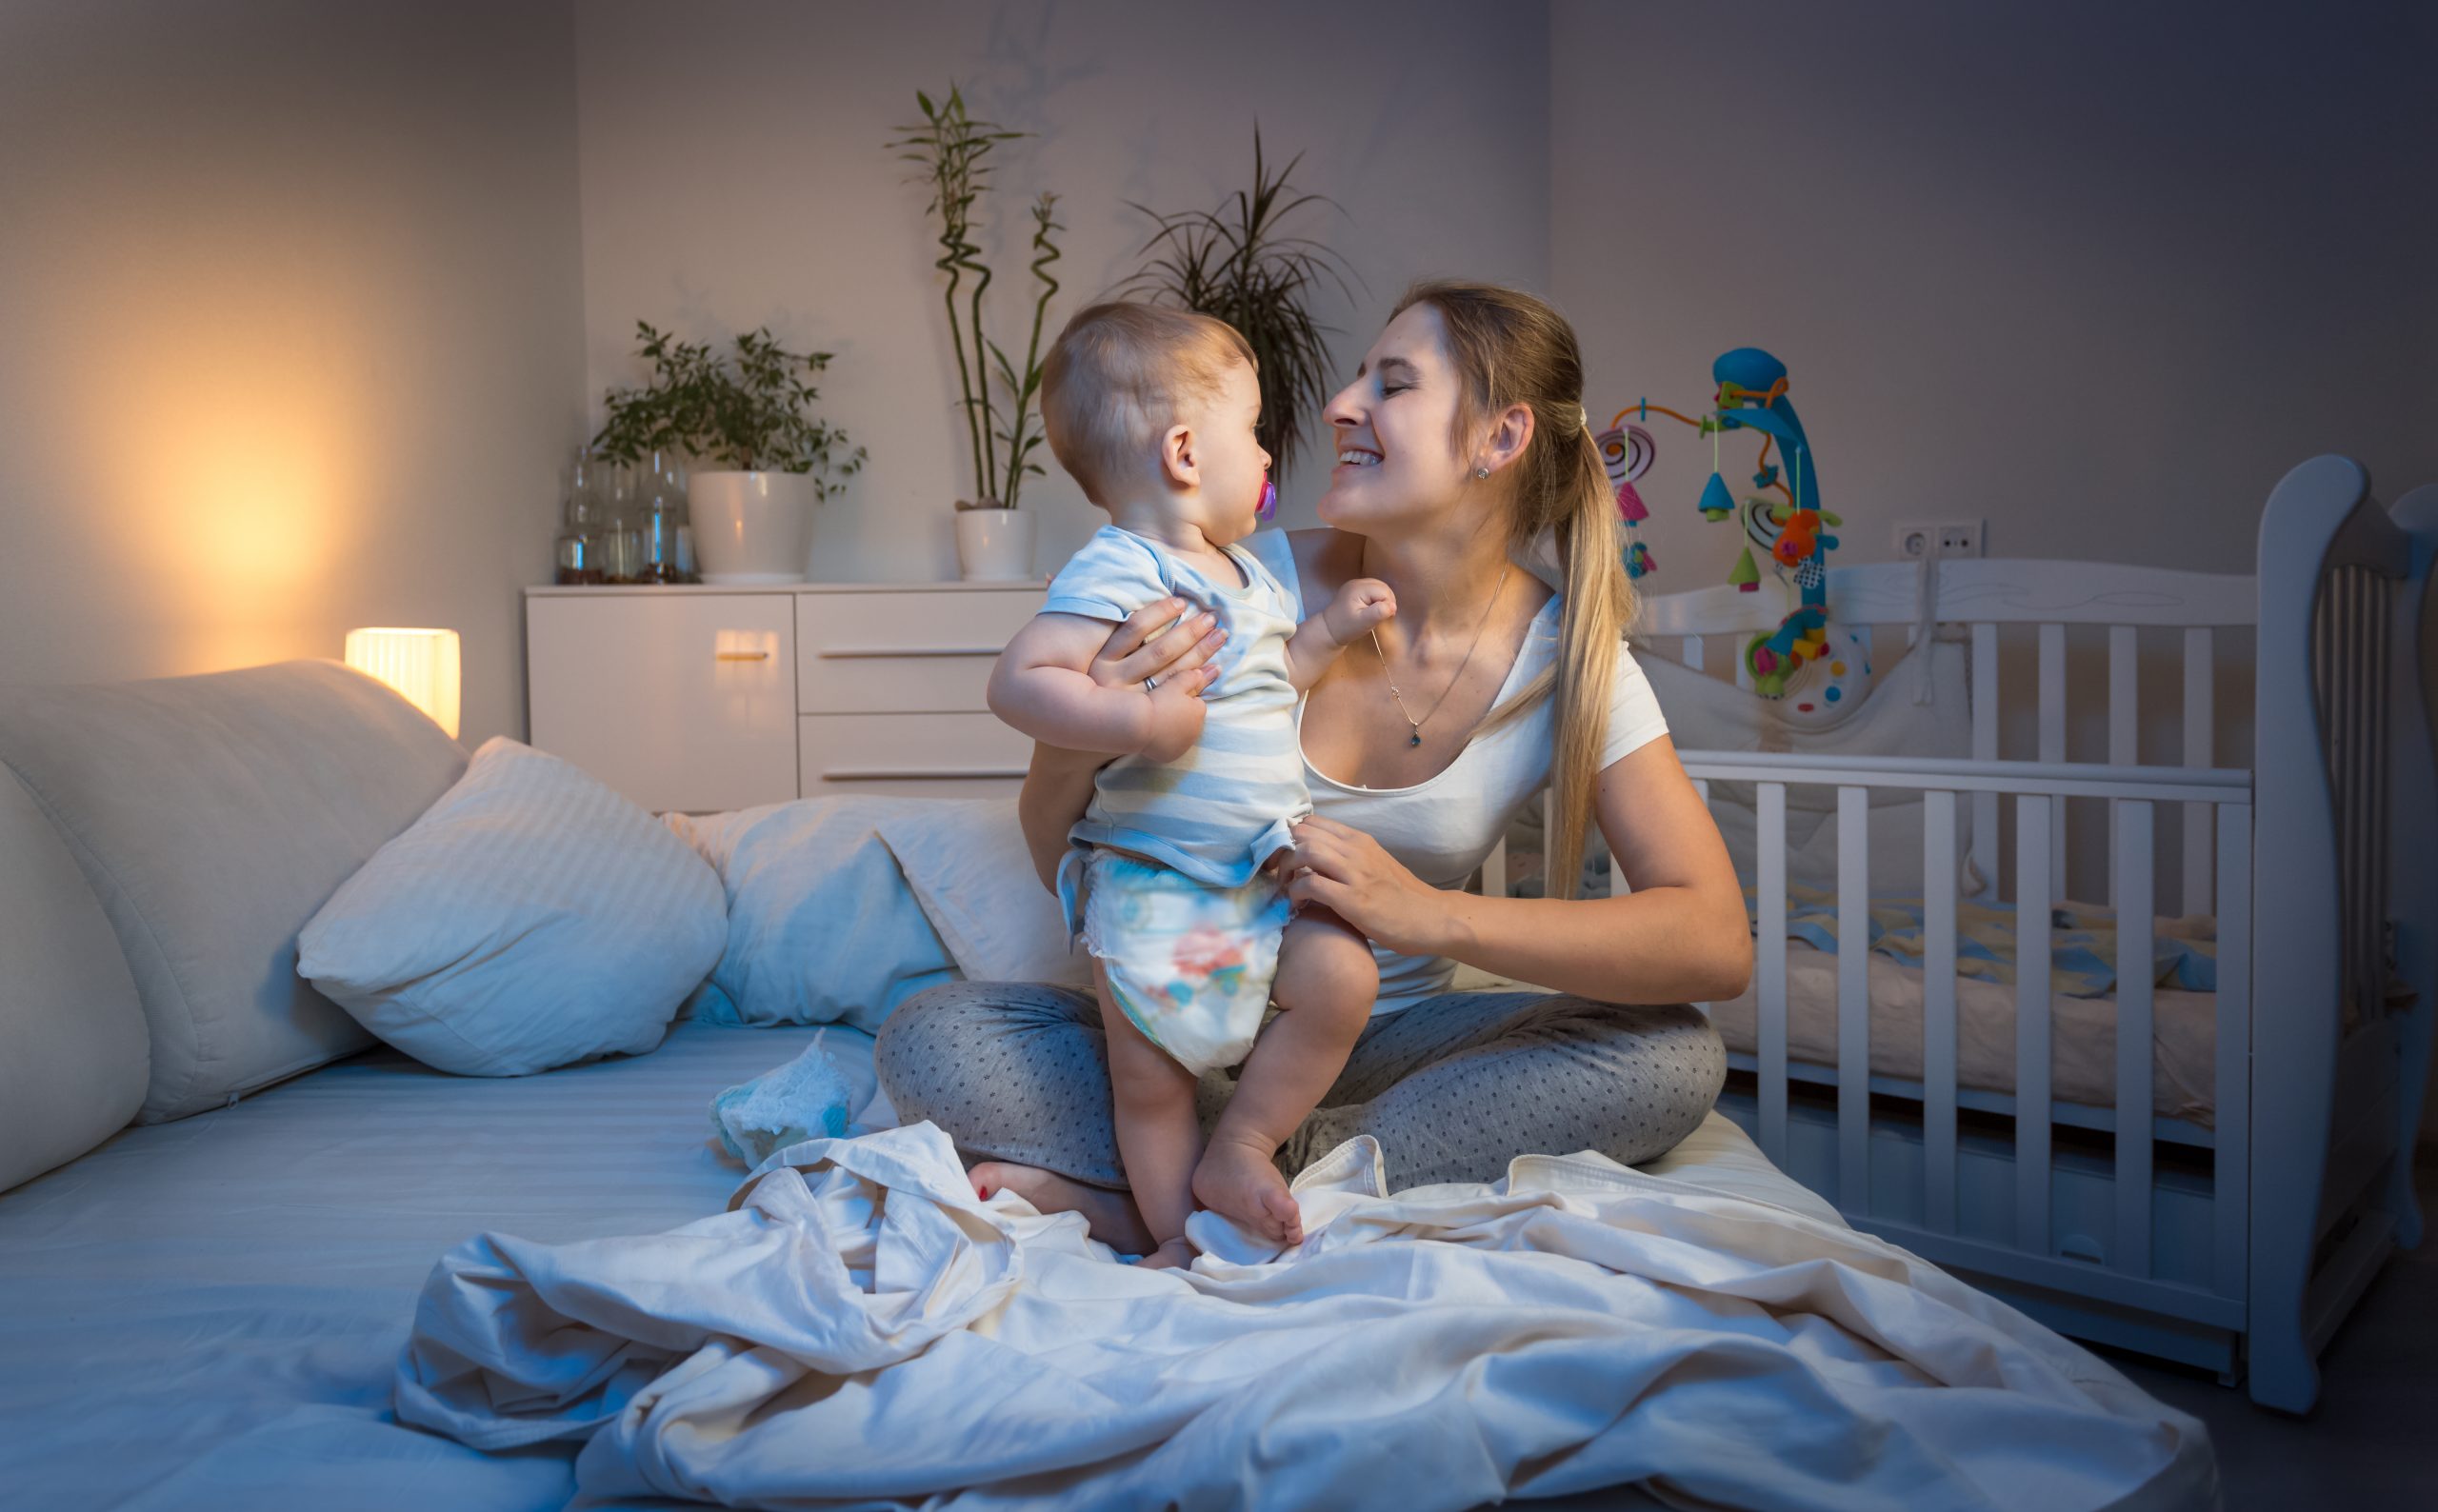 Нужно ли менять подгузник ребенку ночью?